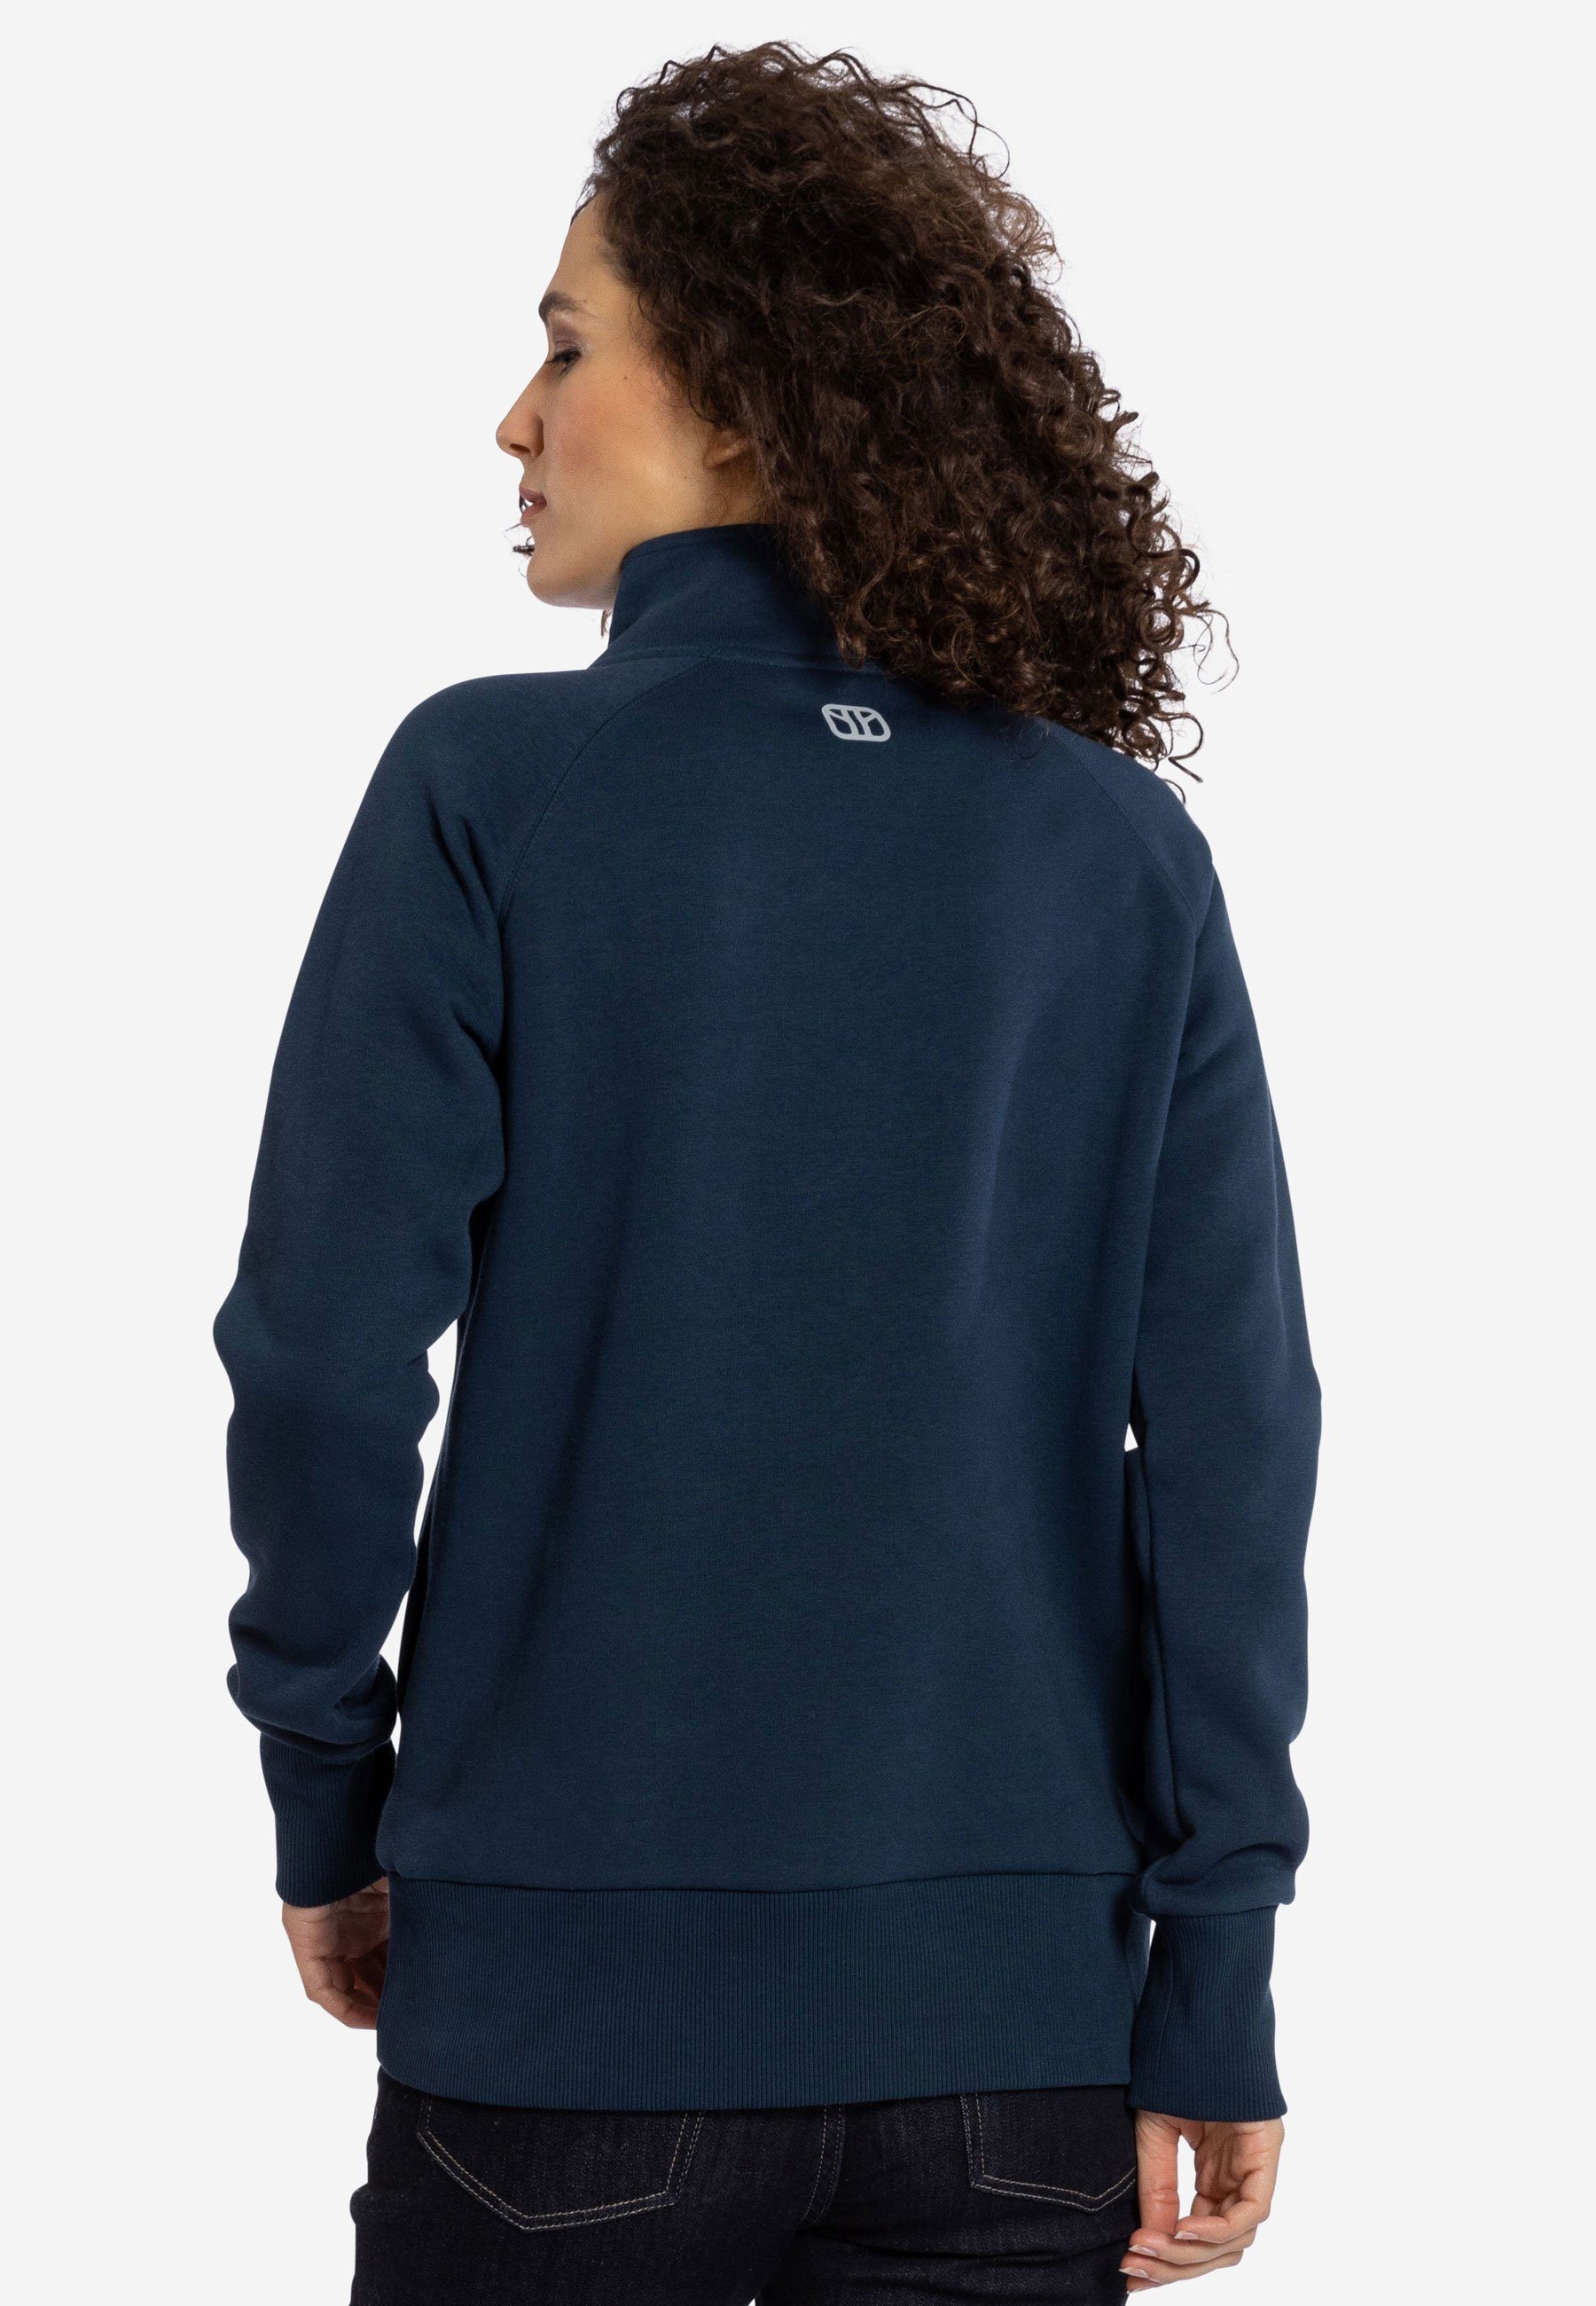 Reißverschluss und Stehkragen Elkline blueshadow mit Seitentaschen Performance Sweatshirt